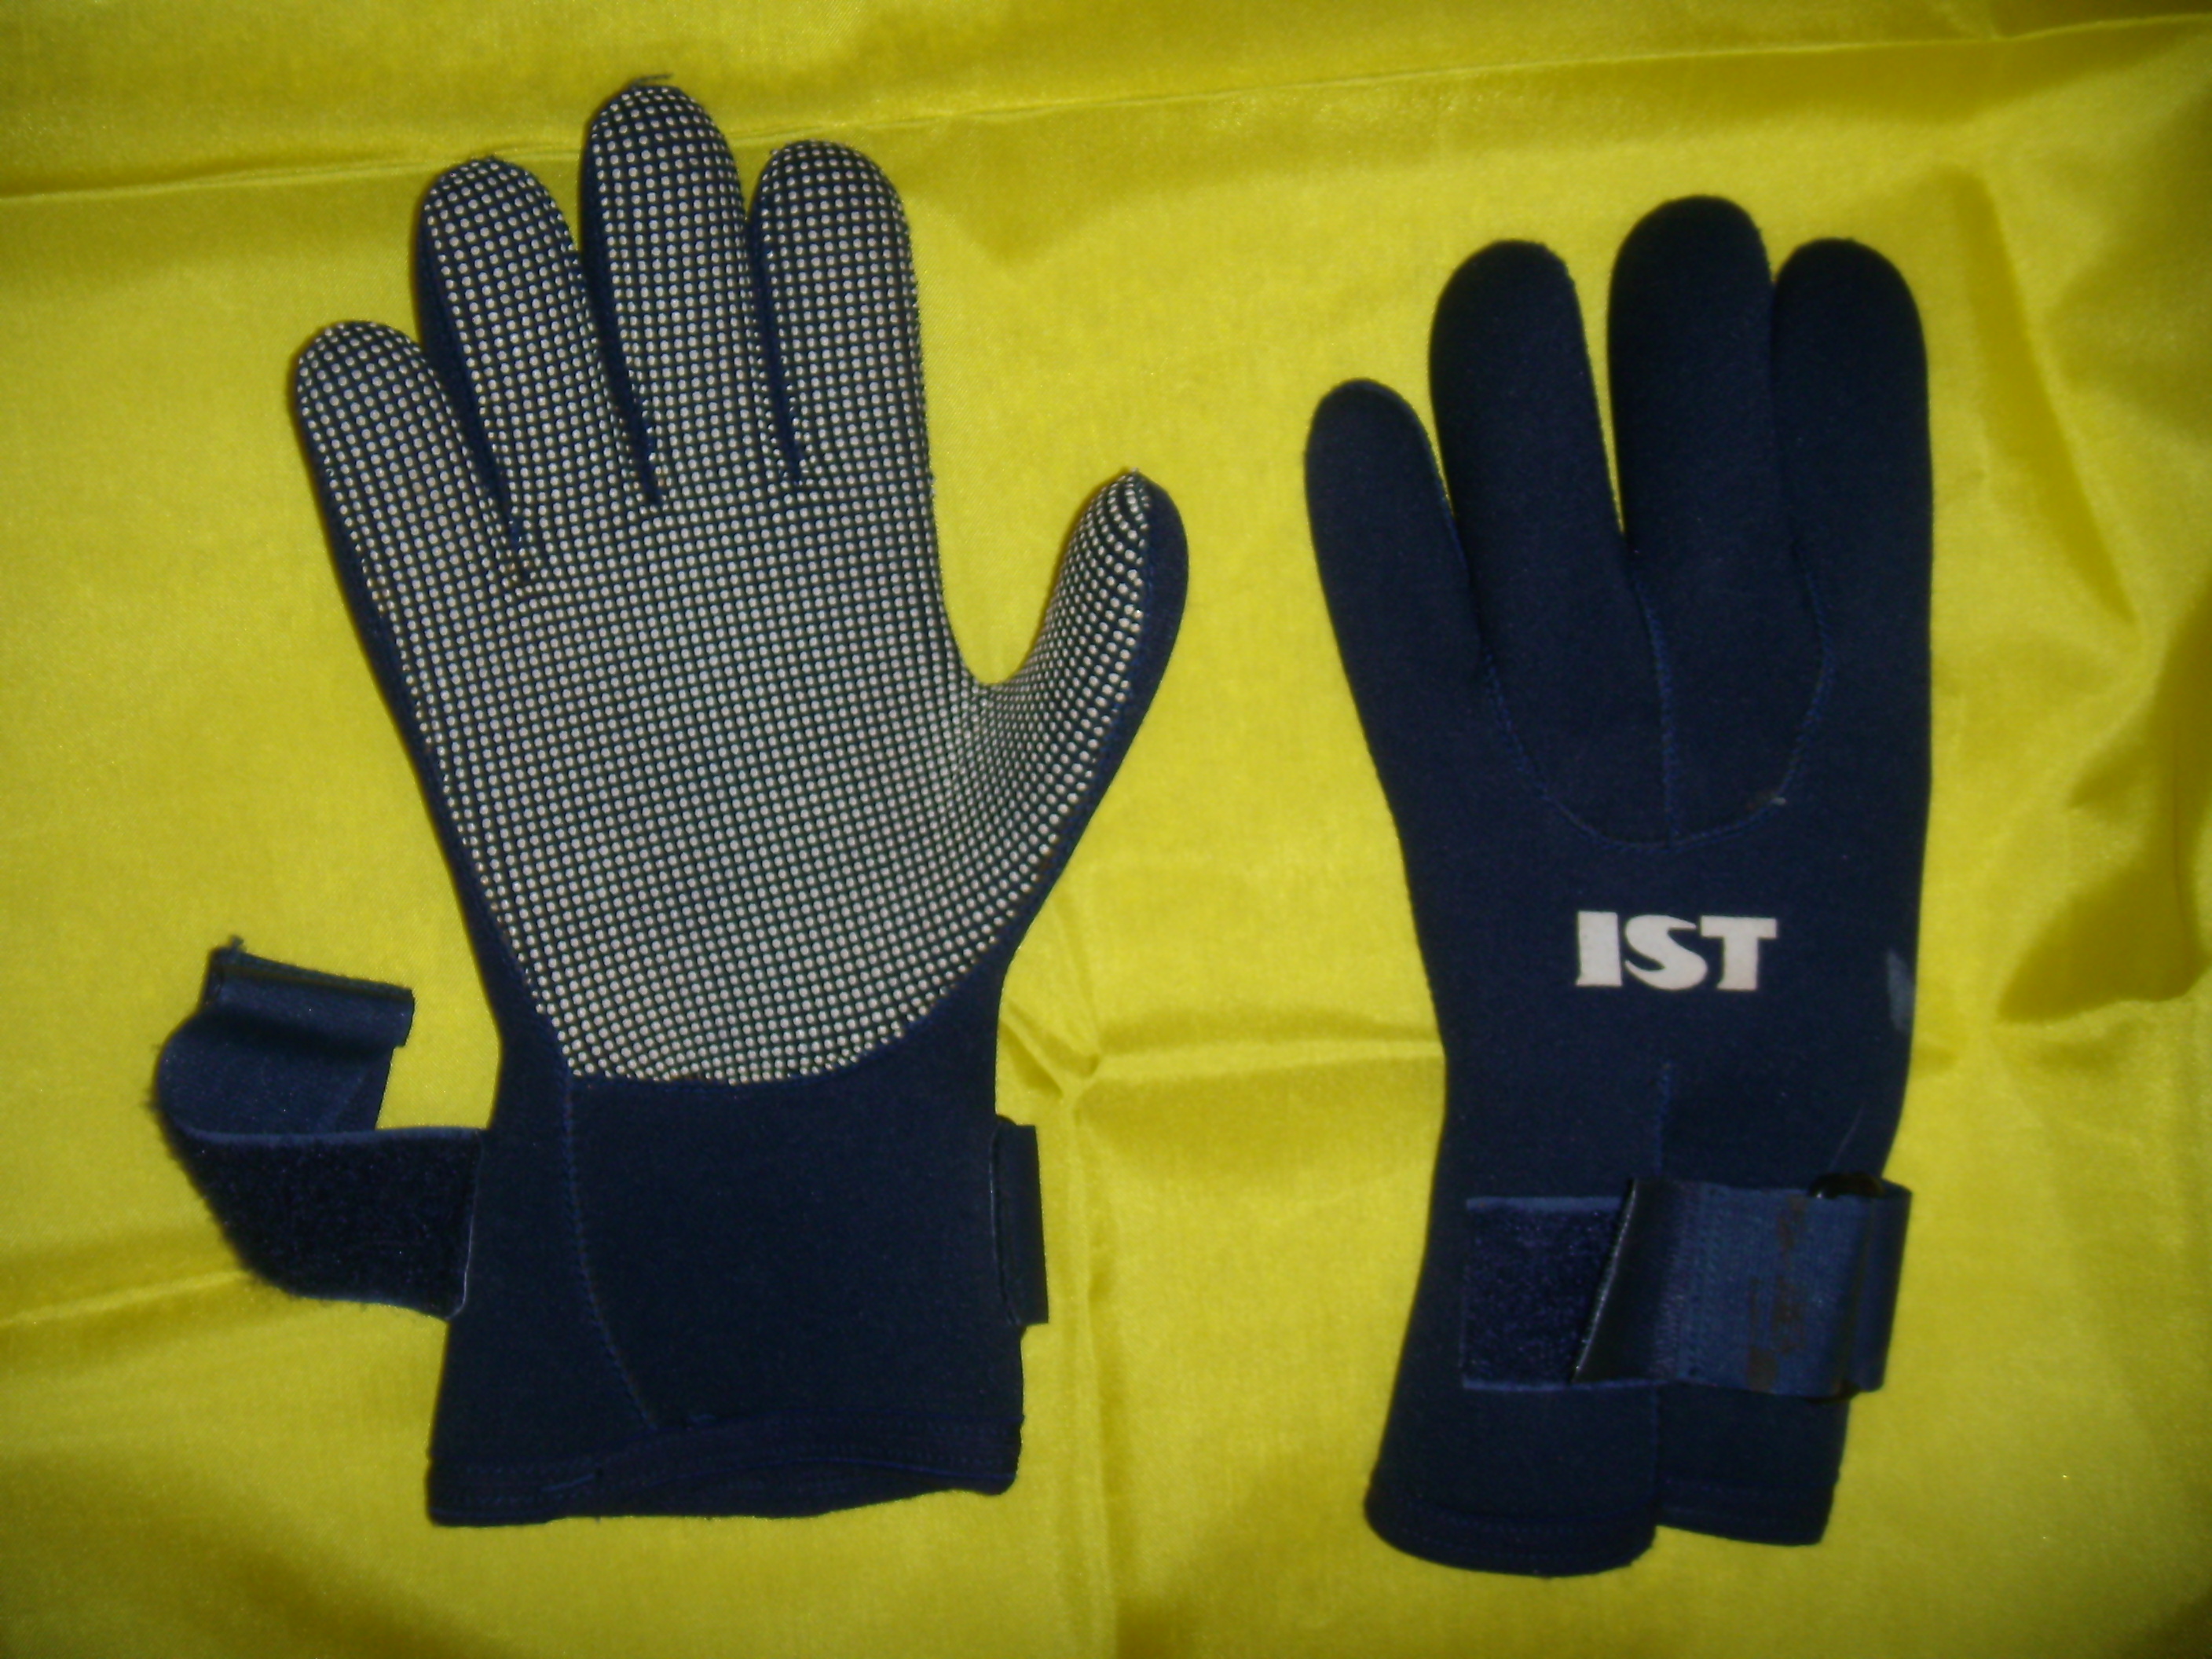 IST gloves